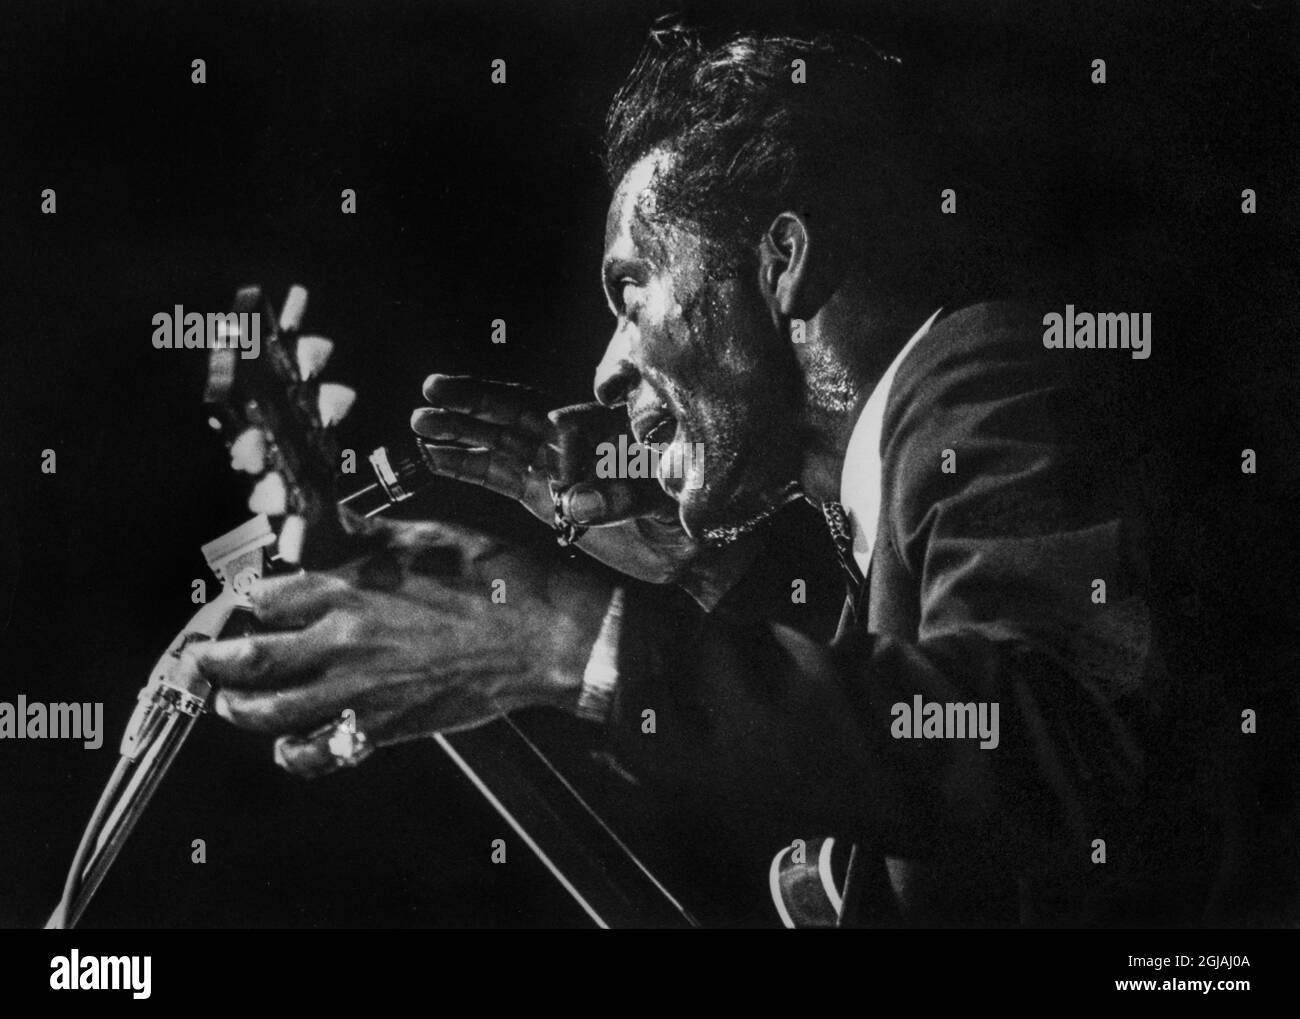 STOCKHOLM 2014-05-08 Datei 11965-10-27 der US-Musiker Chuck Berry erhält den Polar Prize 2014, der am 8. Mai 2014 in Stockholm, Schweden, bekannt gegeben wurde. Originalunterschrift; Chuck Berry spielt A in Stockholm, Schweden 1965-10-27 Foto: Peter Nordahl / SVD / TT / Kod: 1101 chuck2017 Stockfoto